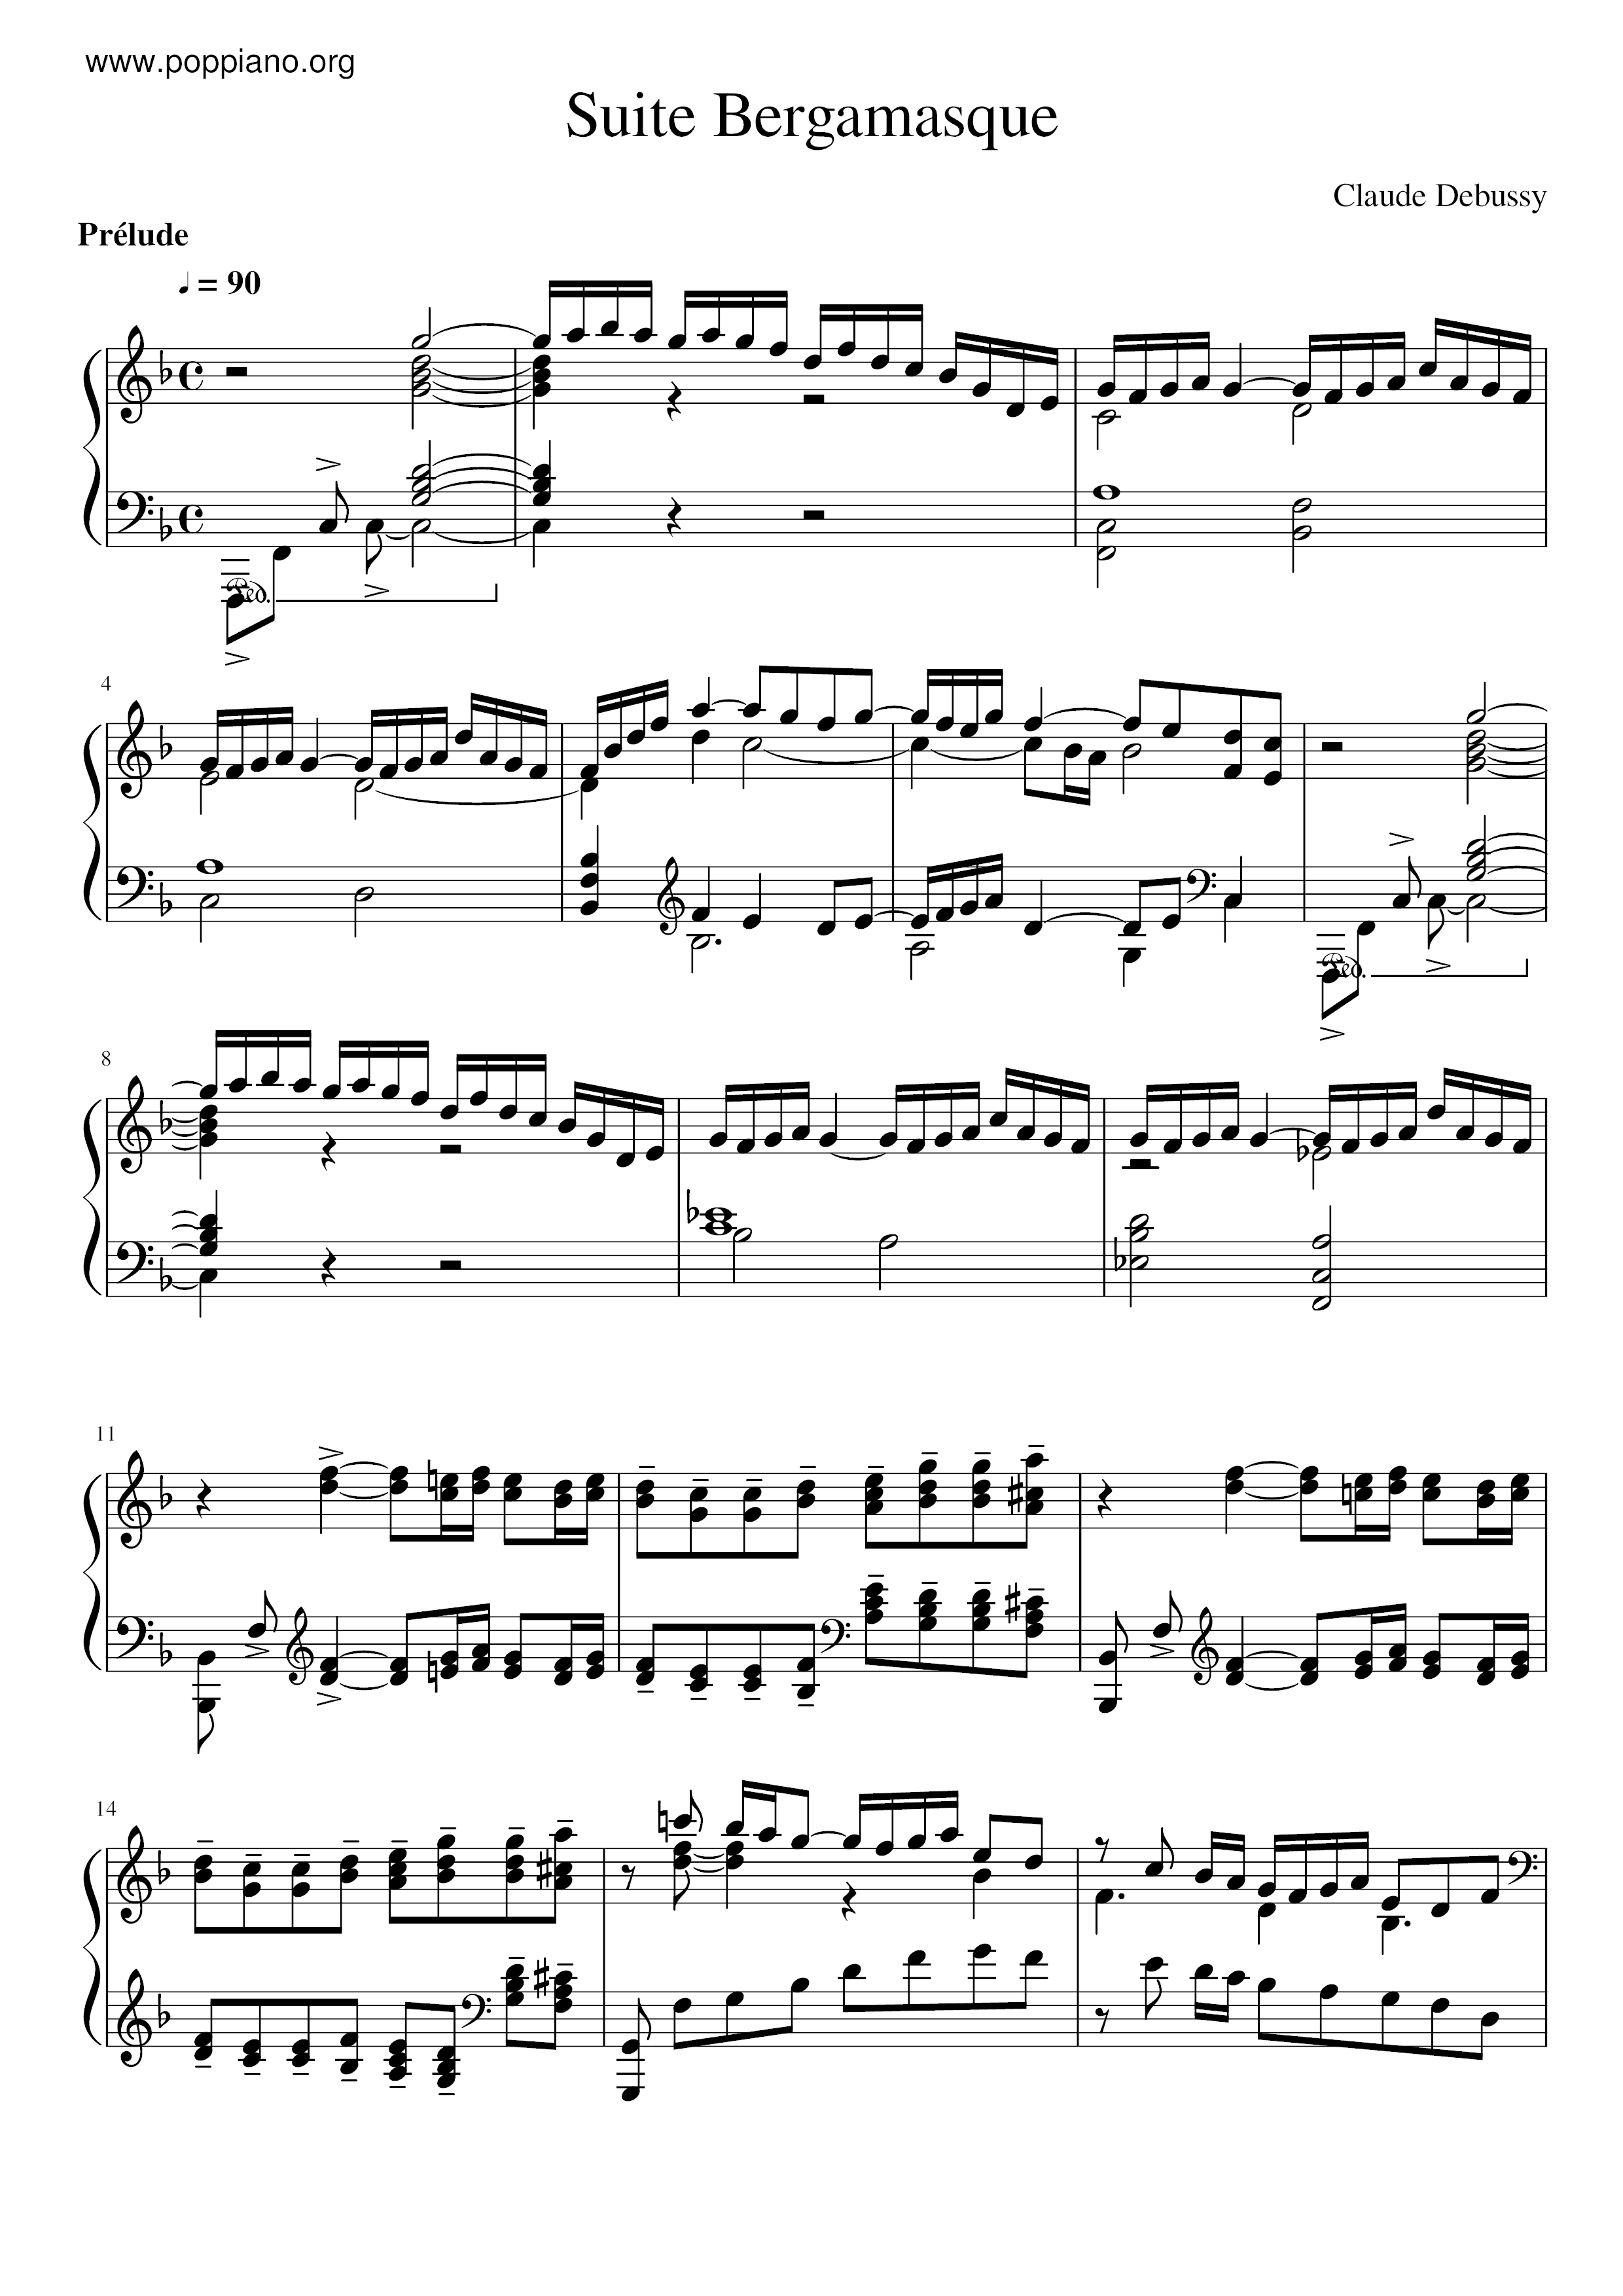 Suite Bergamasqueピアノ譜